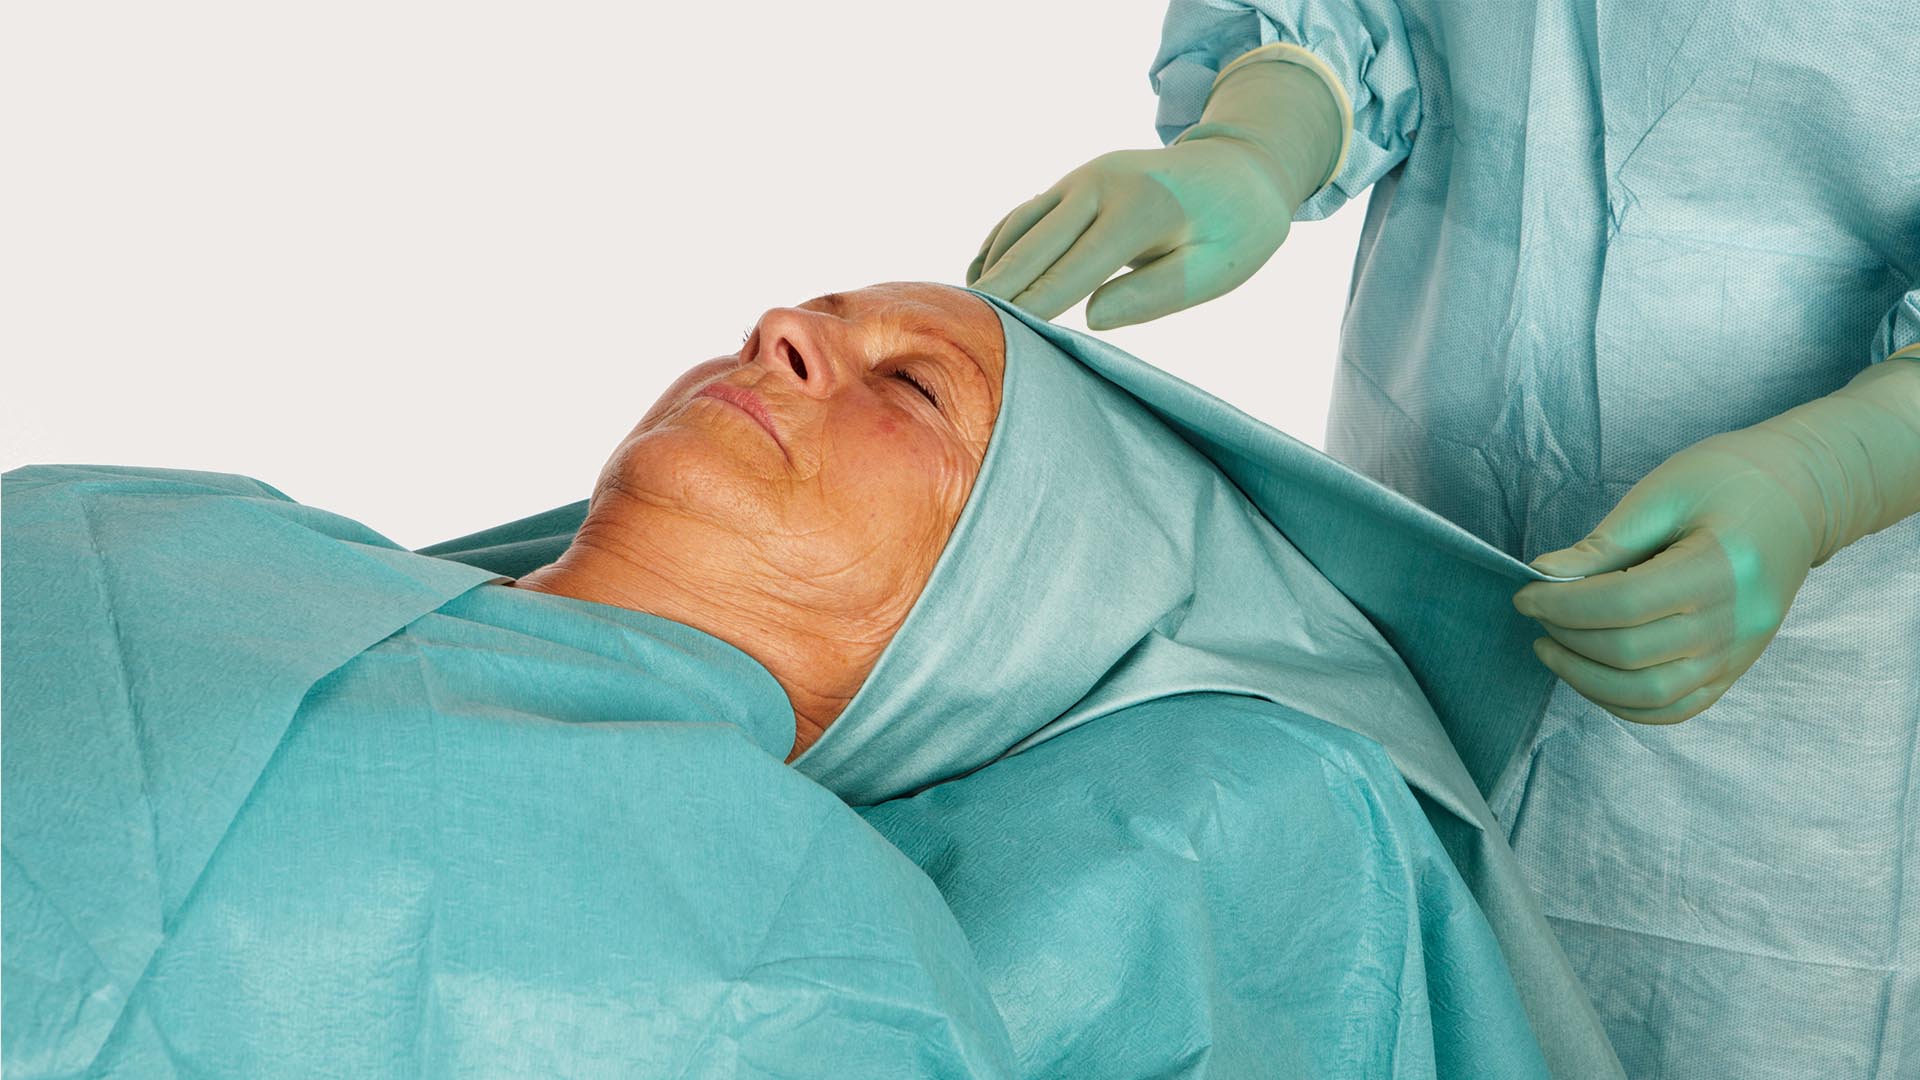 KNK operatsioonilinaga BARRIER naispatsiendi pea